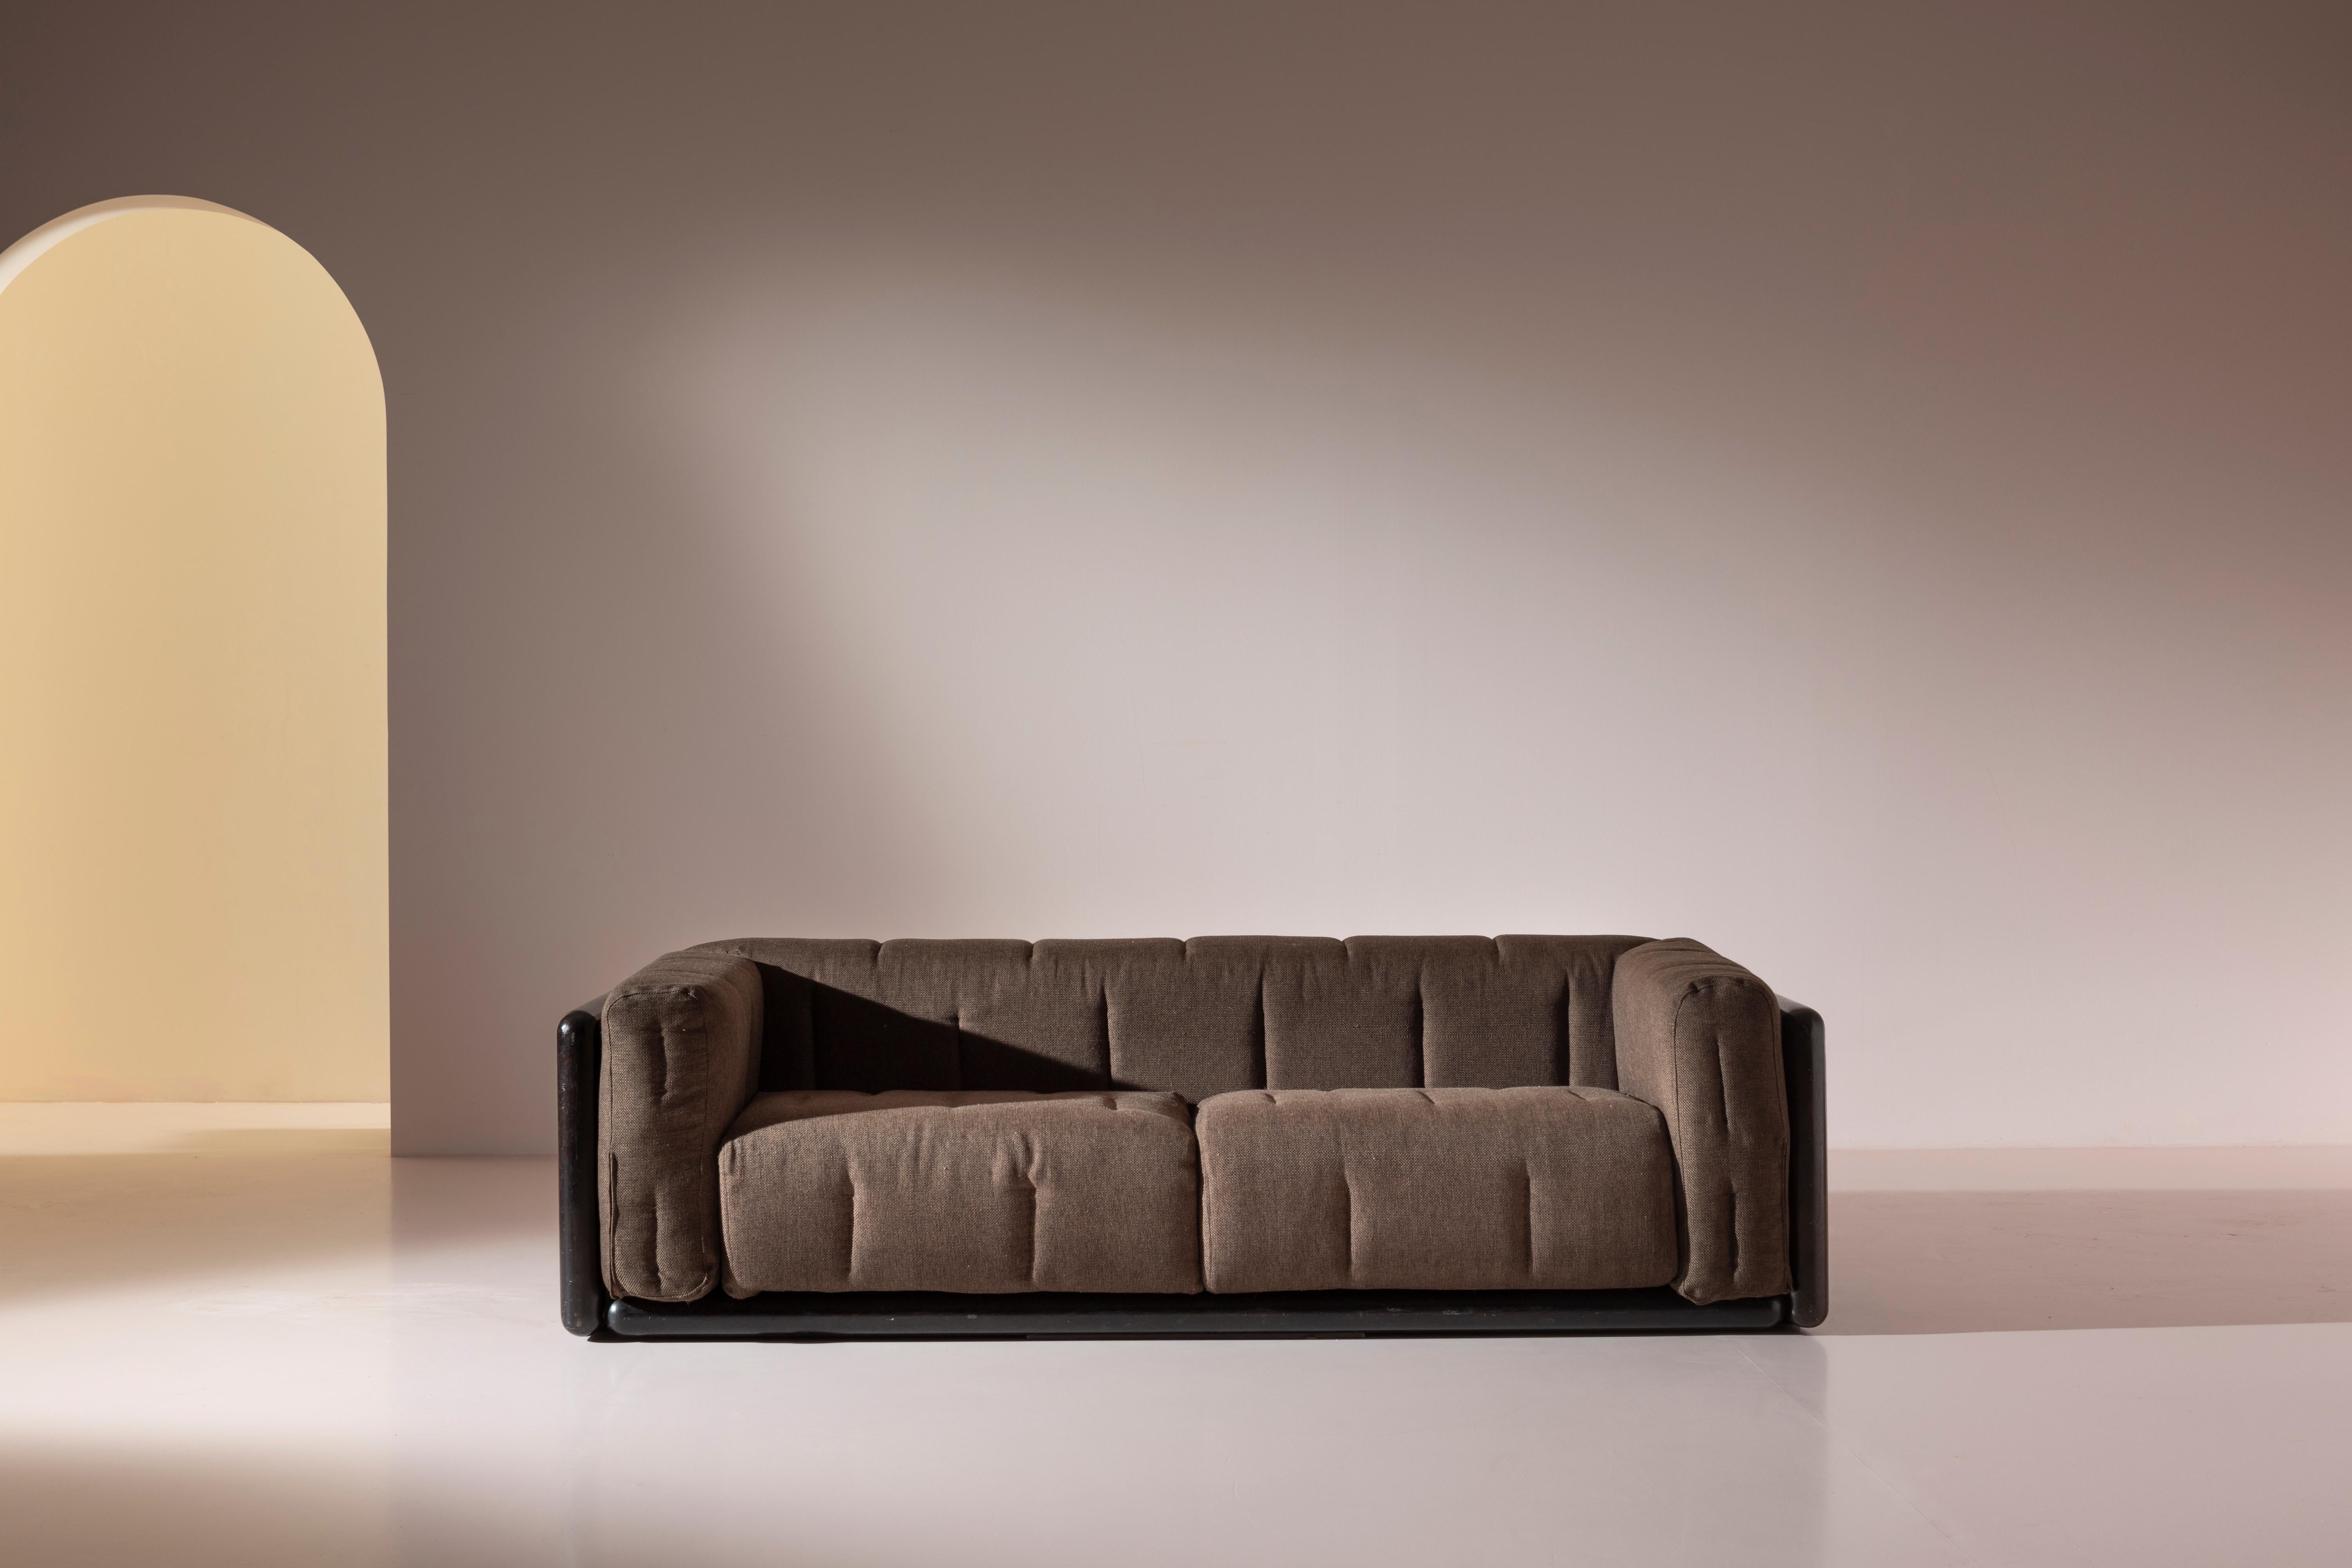 Das dreisitzige Sofa aus Holz und Stoff, Modell Cornaro, wurde 1973 von Carlo Scarpa für Simon Gavina entworfen.

Dieses Sofa verfügt über eine geräumige und bequeme Sitzfläche, die aus einer Reihe von gepolsterten Kissen in einem lackierten